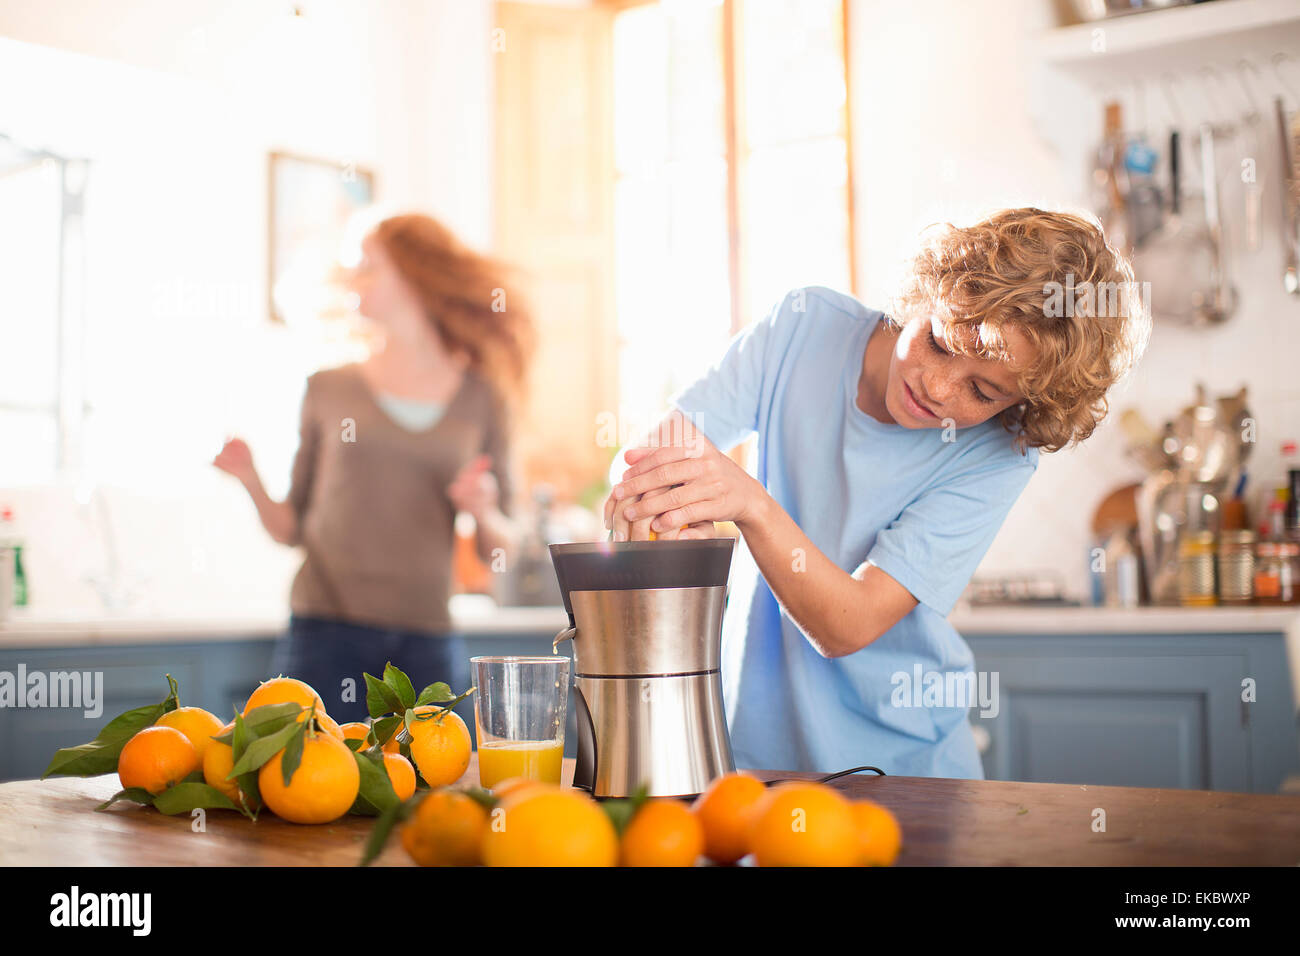 Adolescente jugos de naranja en la cocina Foto de stock